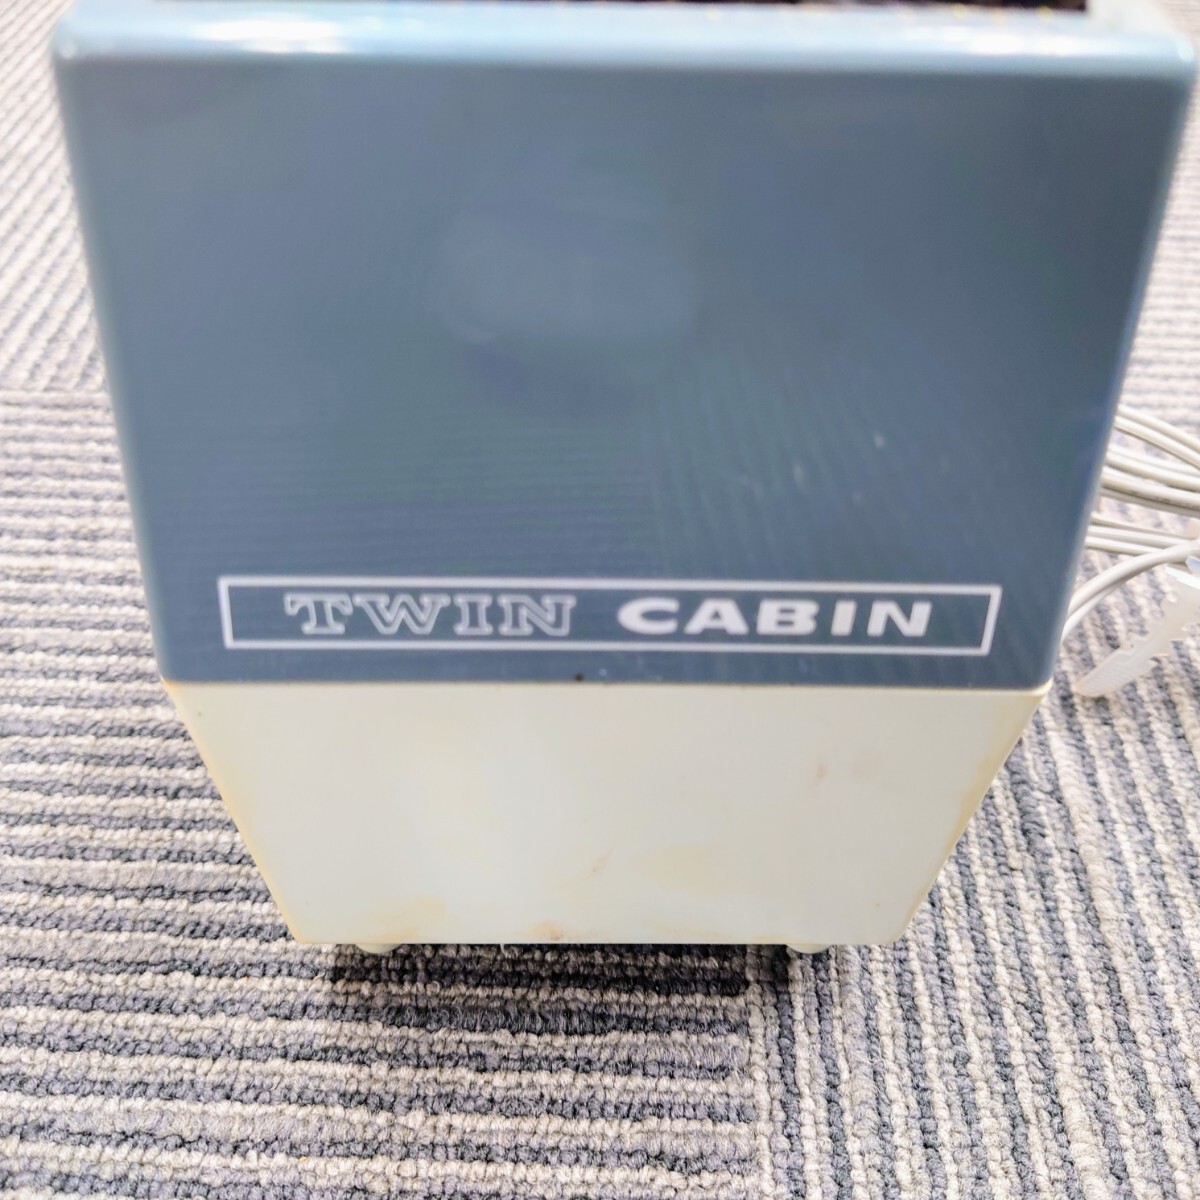 I810 スライド映写機 CABIN TWINCABIN SLIDE PROJECTOR キャビン ツインキャビン 映写機 プロジェクター 中古 ジャンク品 訳ありの画像6